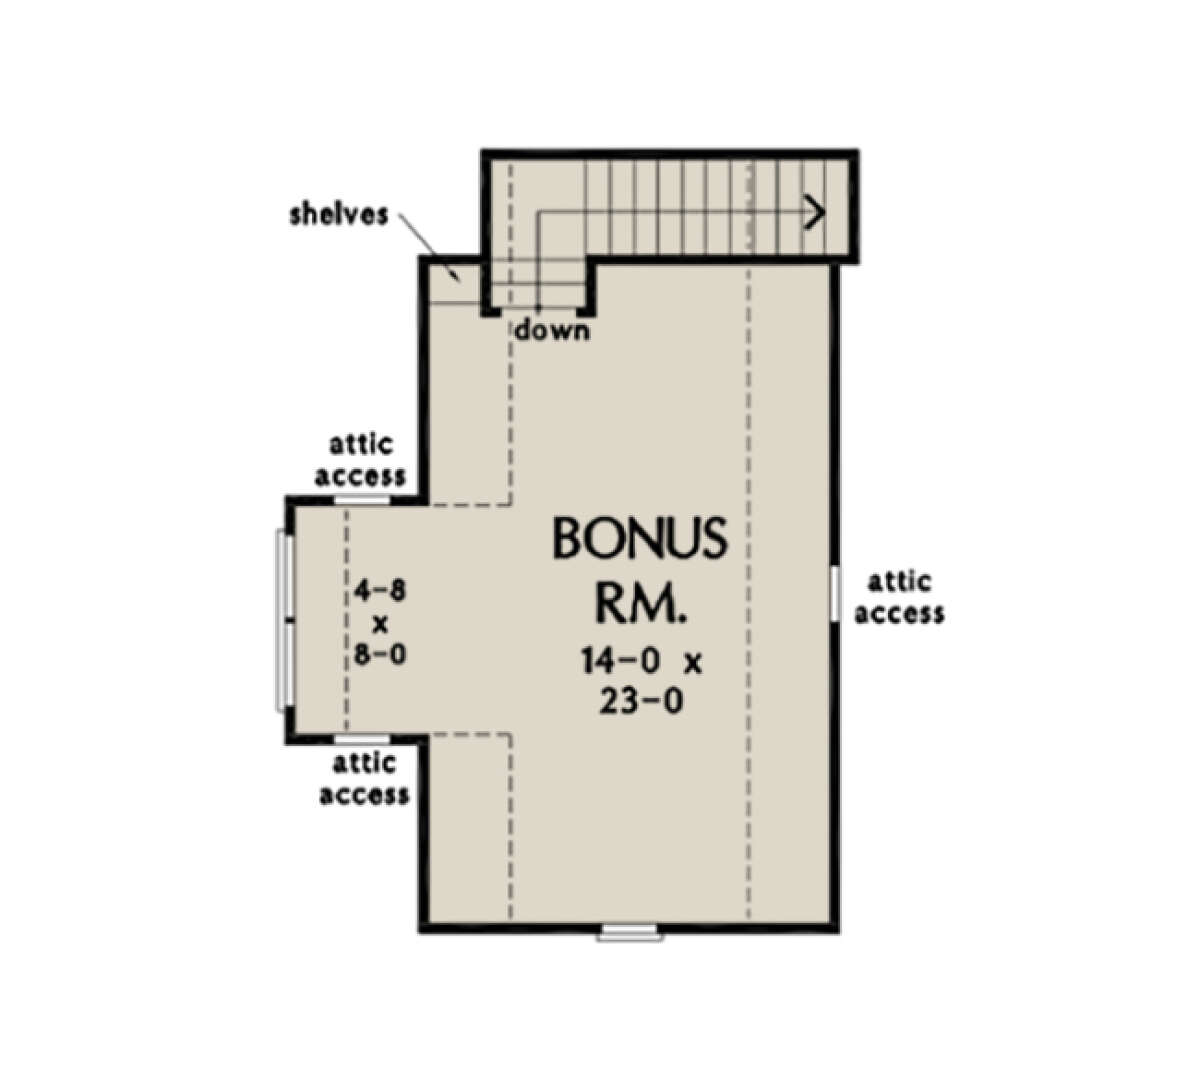 Bonus Room for House Plan #2865-00131